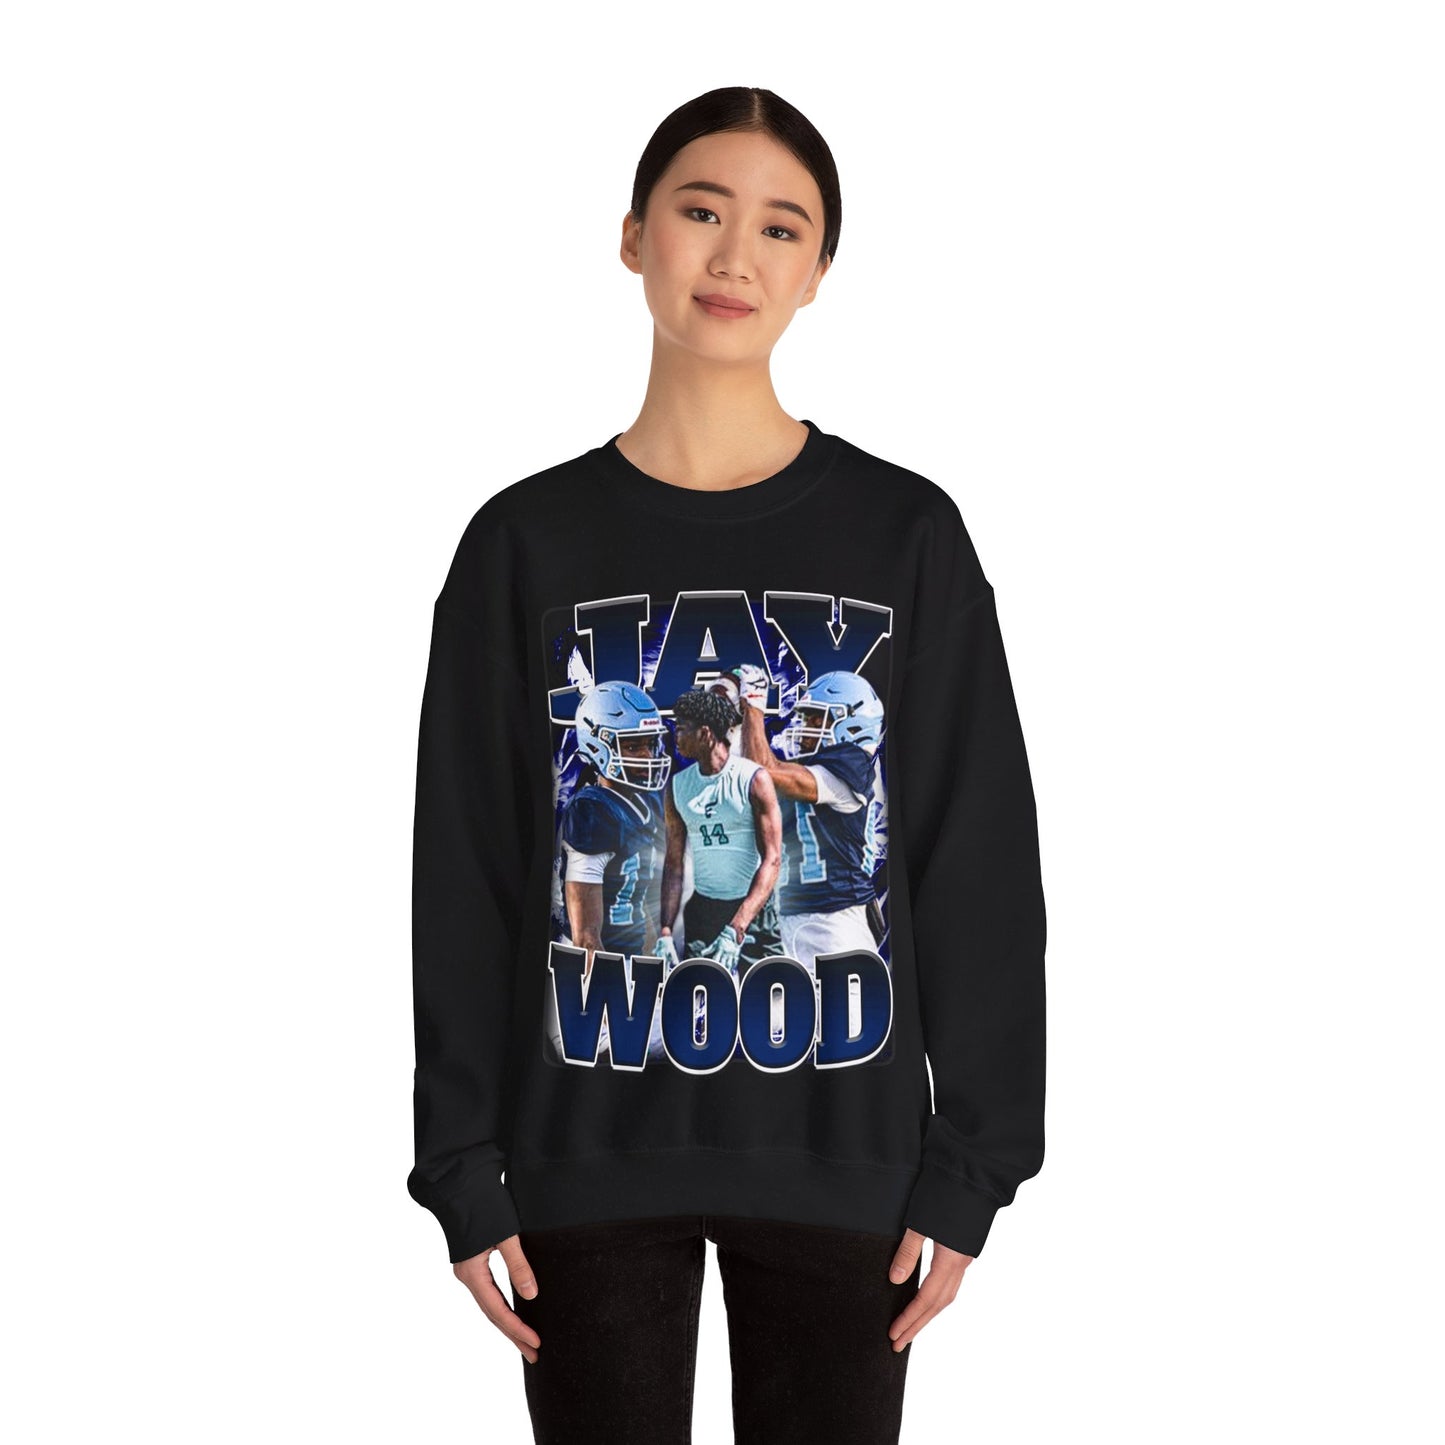 Jay Wood Crewneck Sweatshirt